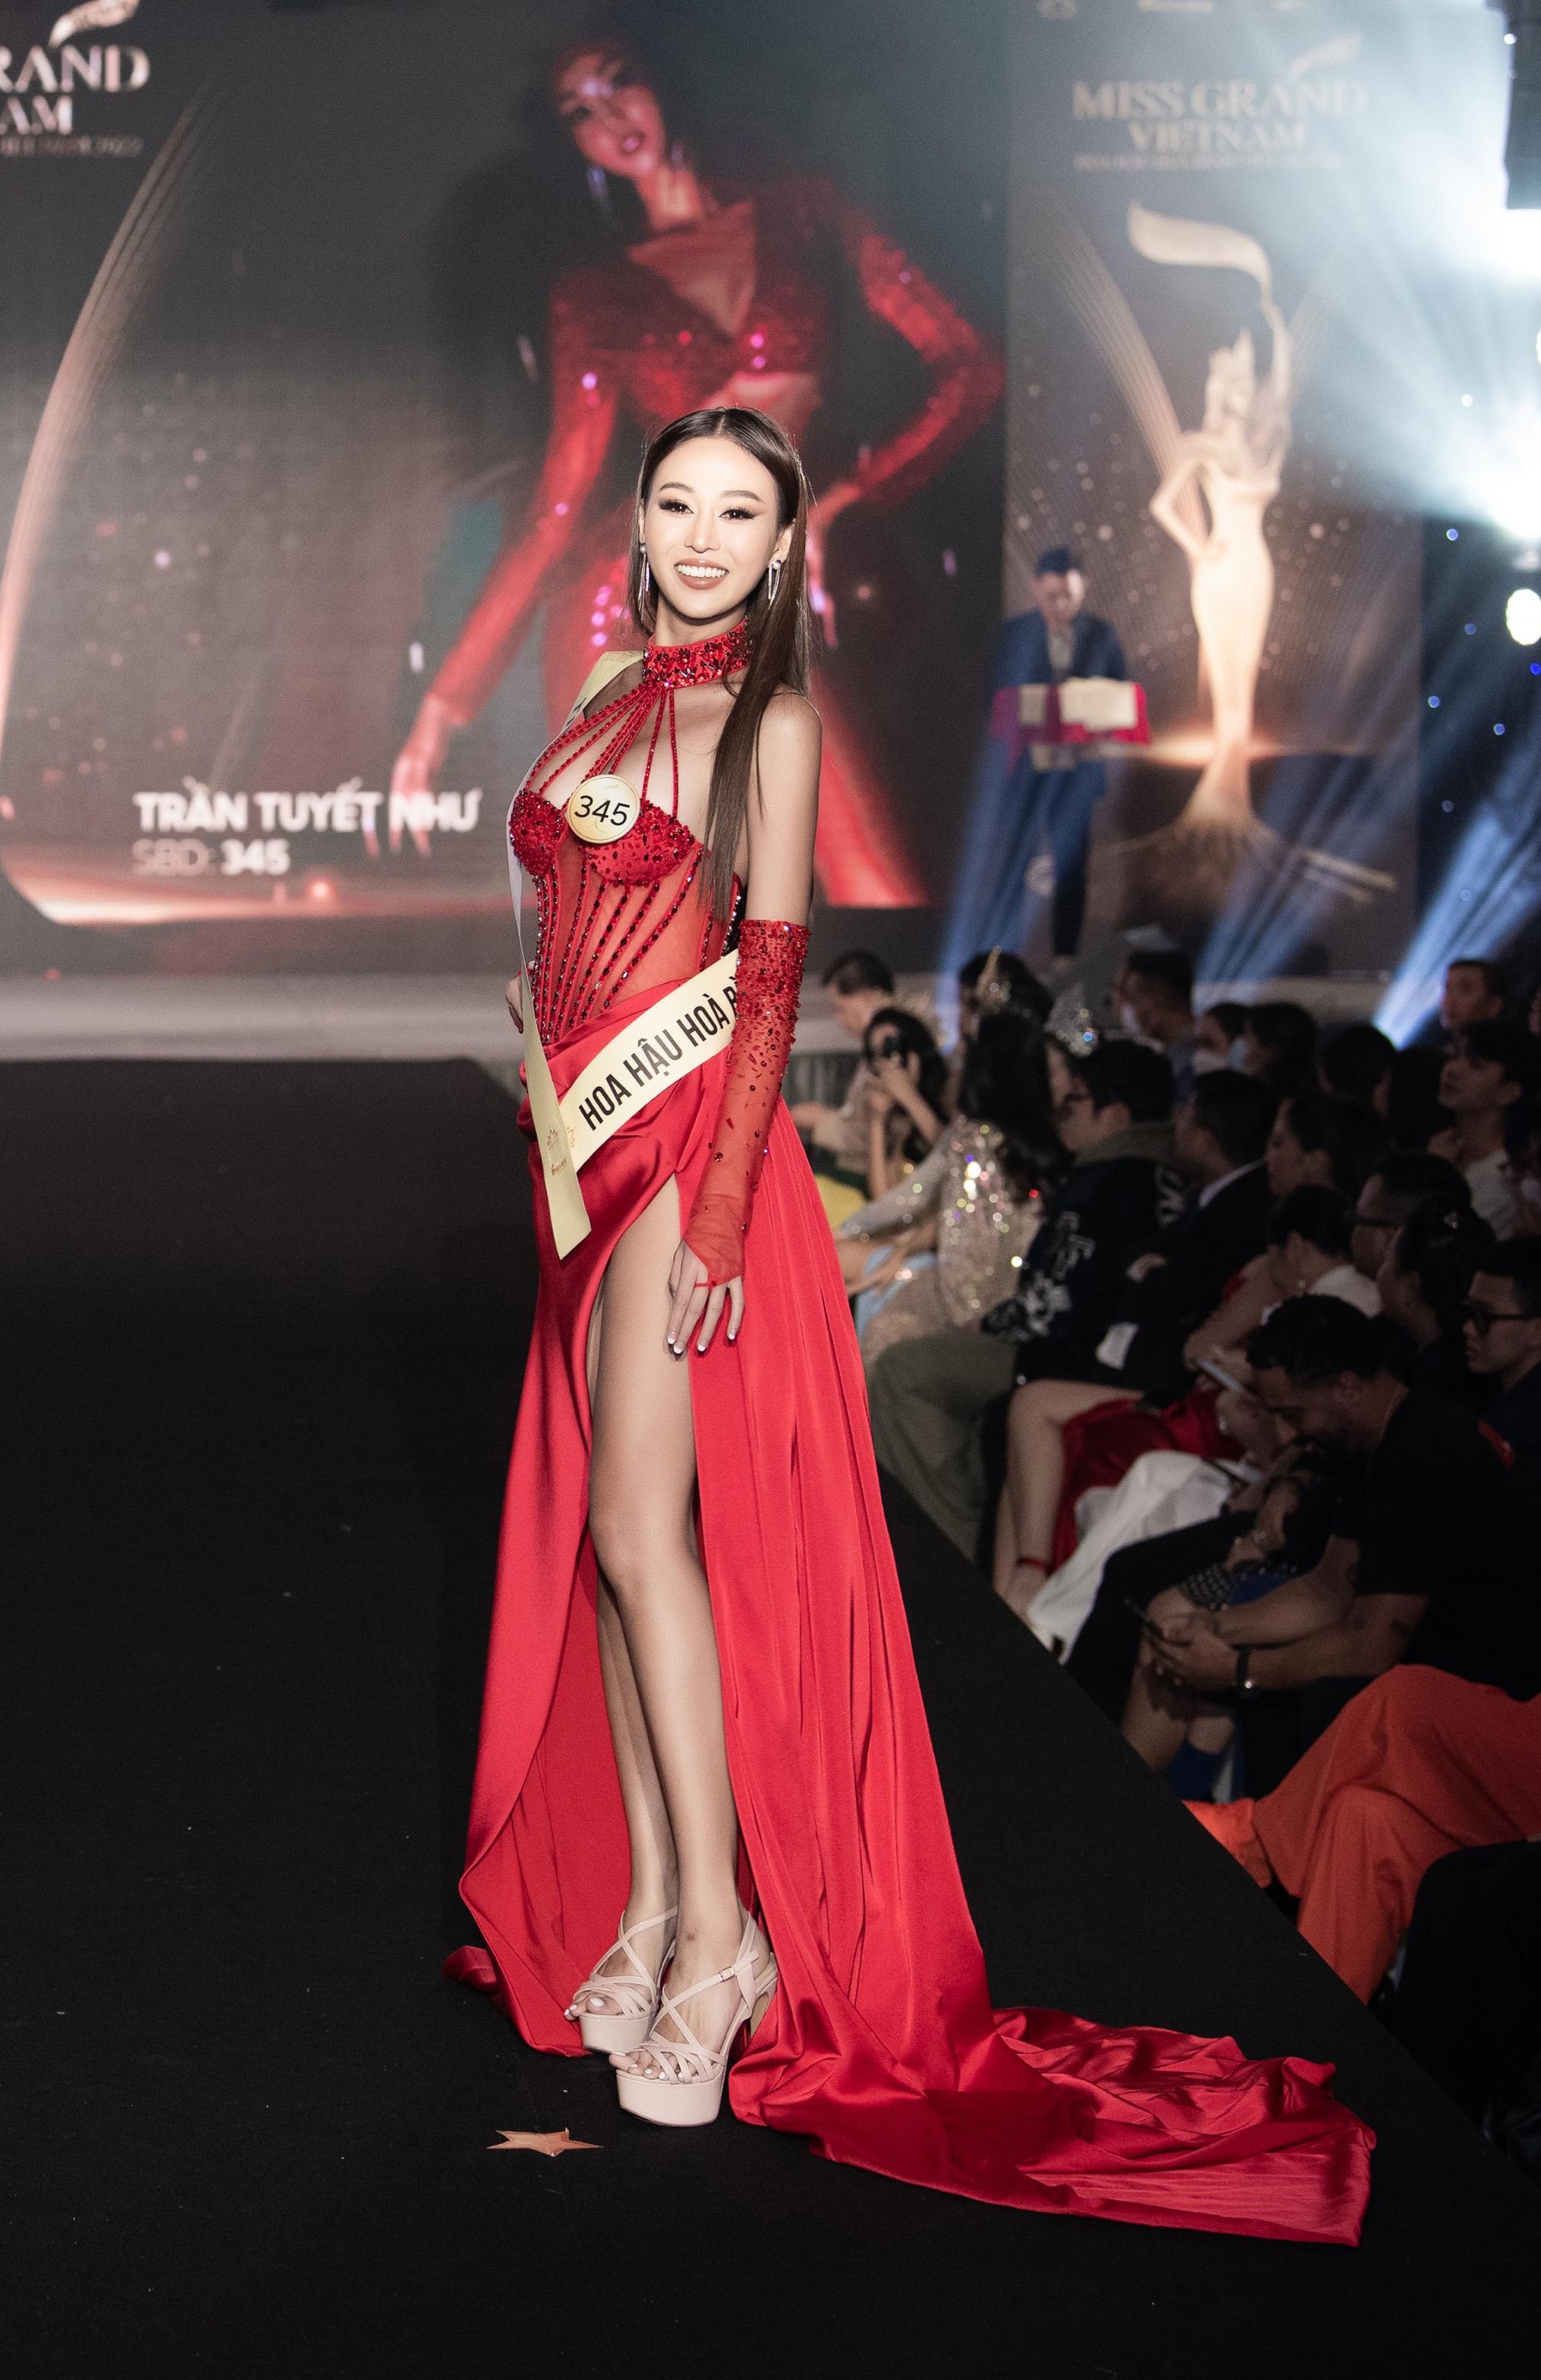 Mai Ngô, Quỳnh Châu tung chiêu catwalk độc đáo tại lễ nhận sash của Miss Grand Vietnam 2022 - Ảnh 4.